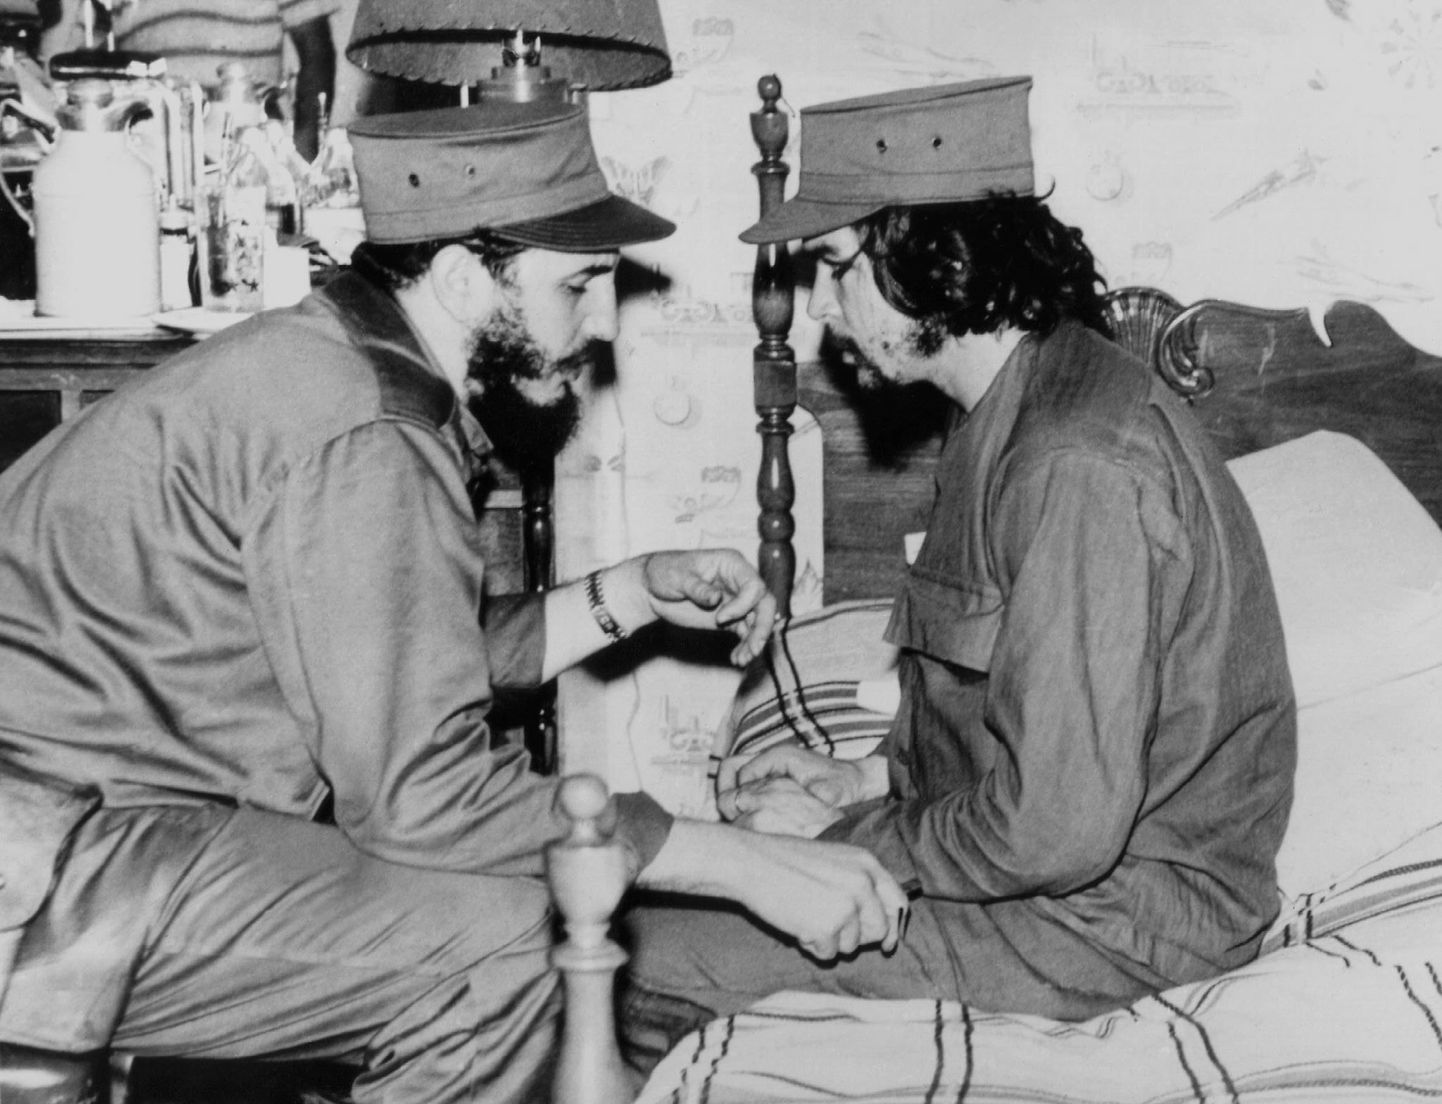 Aasta 1959: 33-aastane Fidel Castro ja  31-aastane Ernesto Che Guevara kohtumas Havannas.